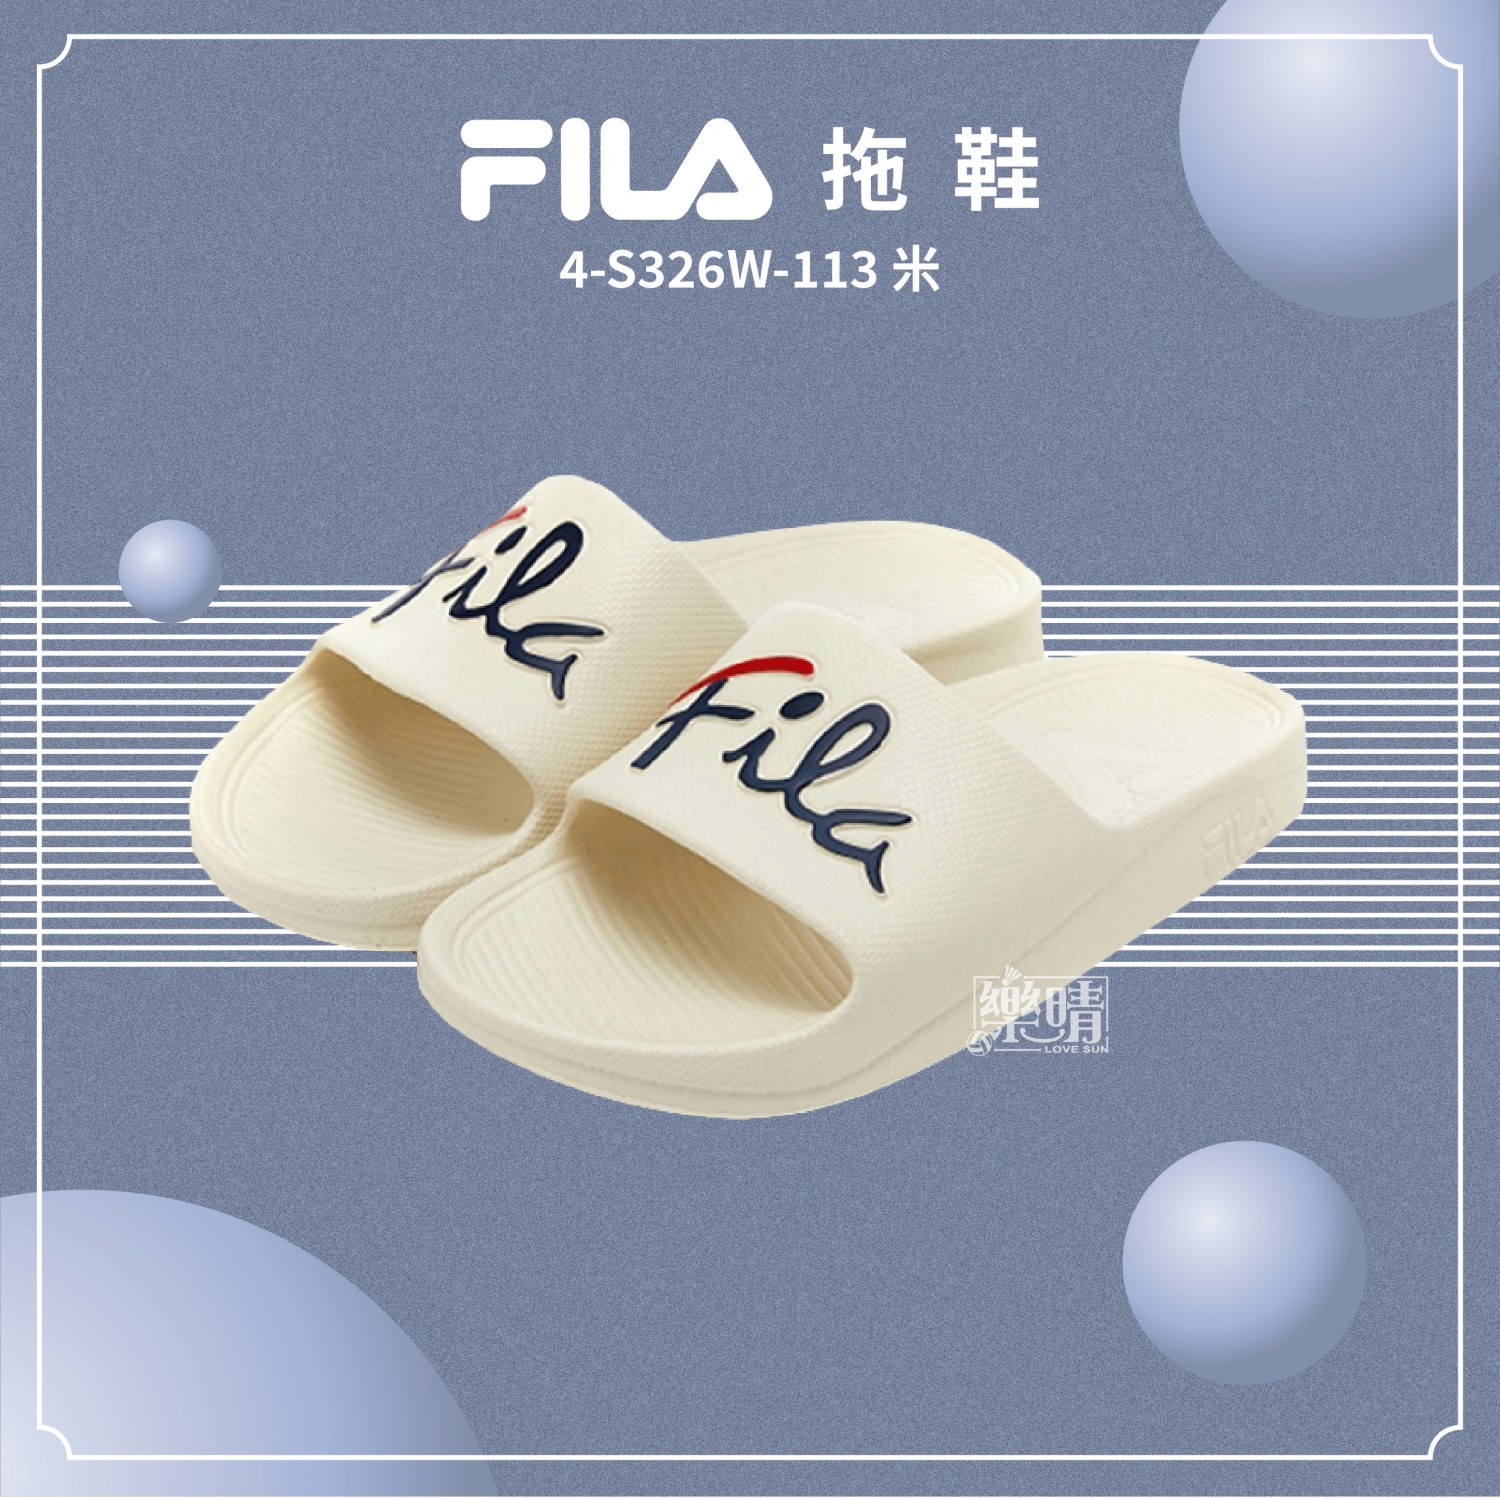 FILA 拖鞋 4-S326W-113